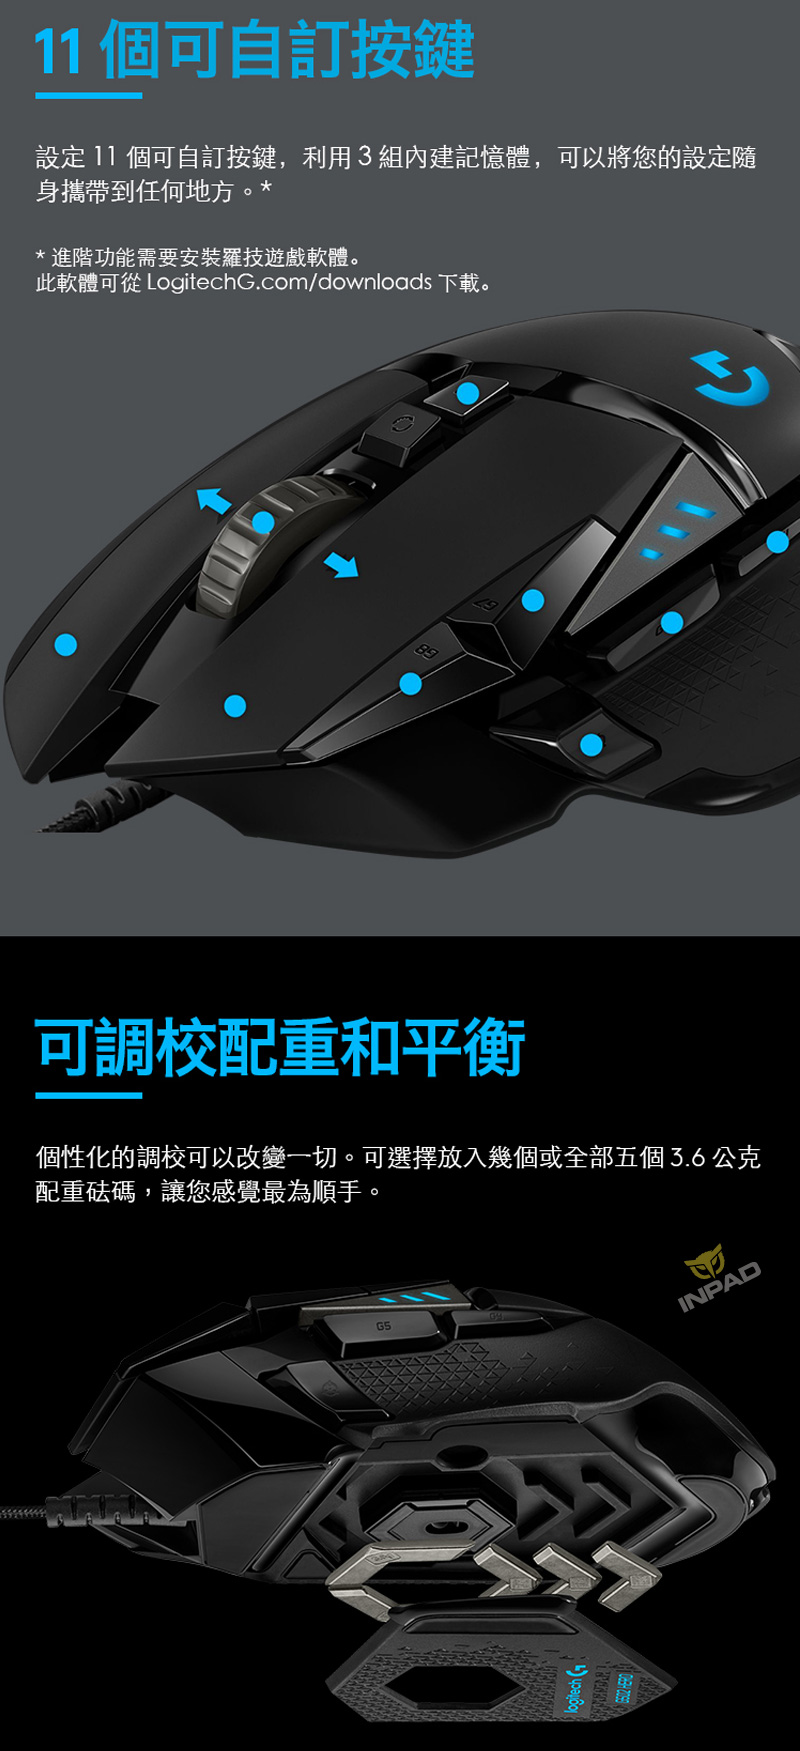 Logitech 羅技g502 Hero光學滑鼠 有線滑鼠 電競滑鼠 滑鼠 鼠墊 滑鼠周邊 硬派精璽線上購物網